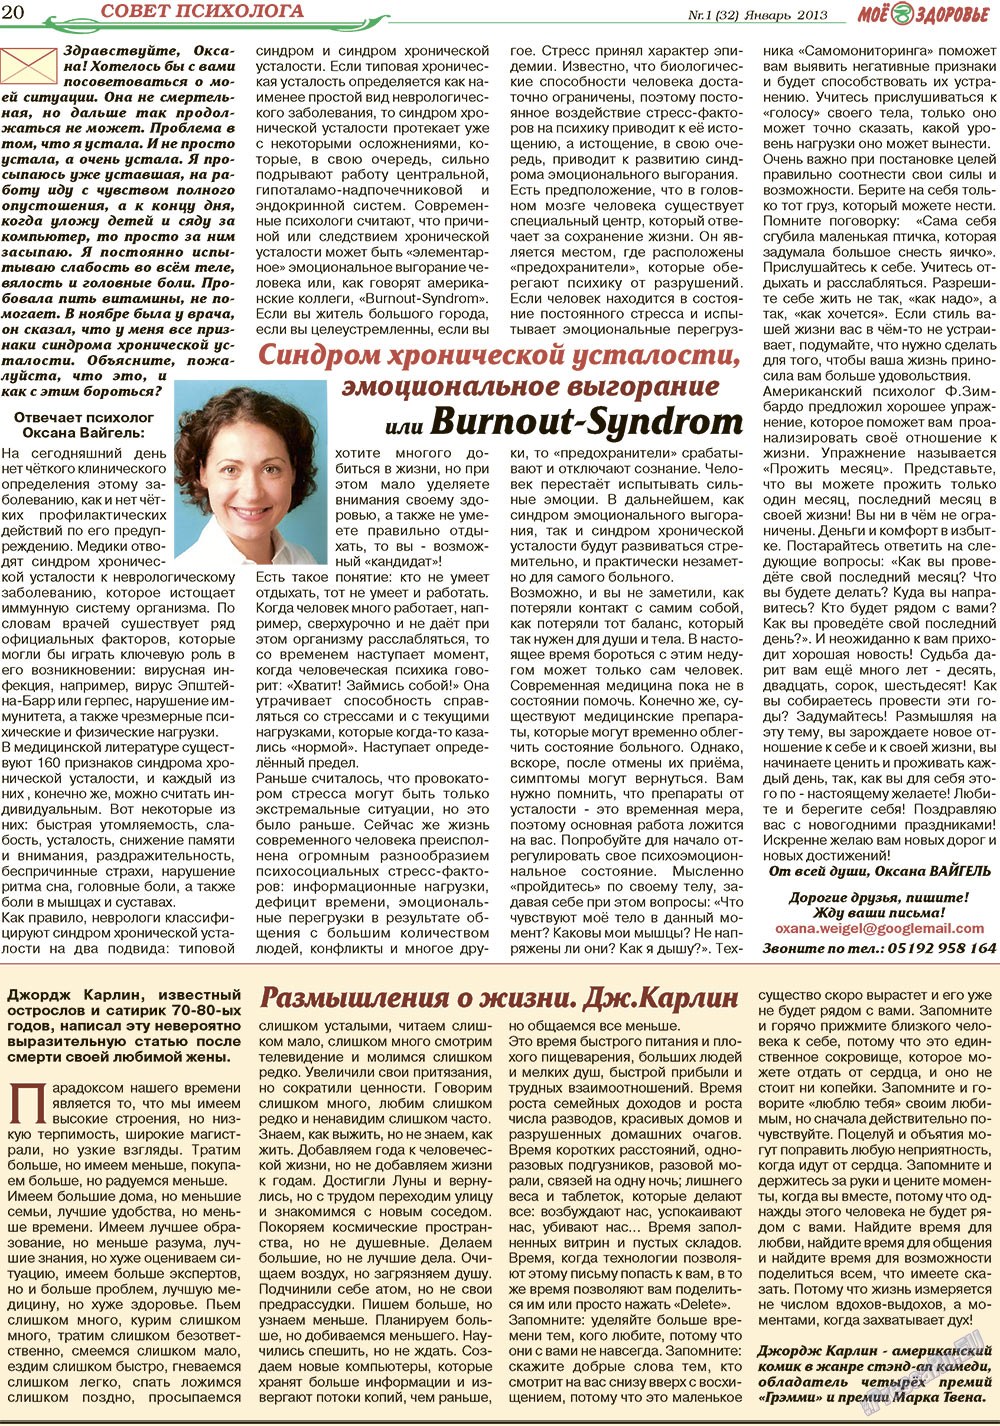 Кругозор (газета). 2013 год, номер 1, стр. 20